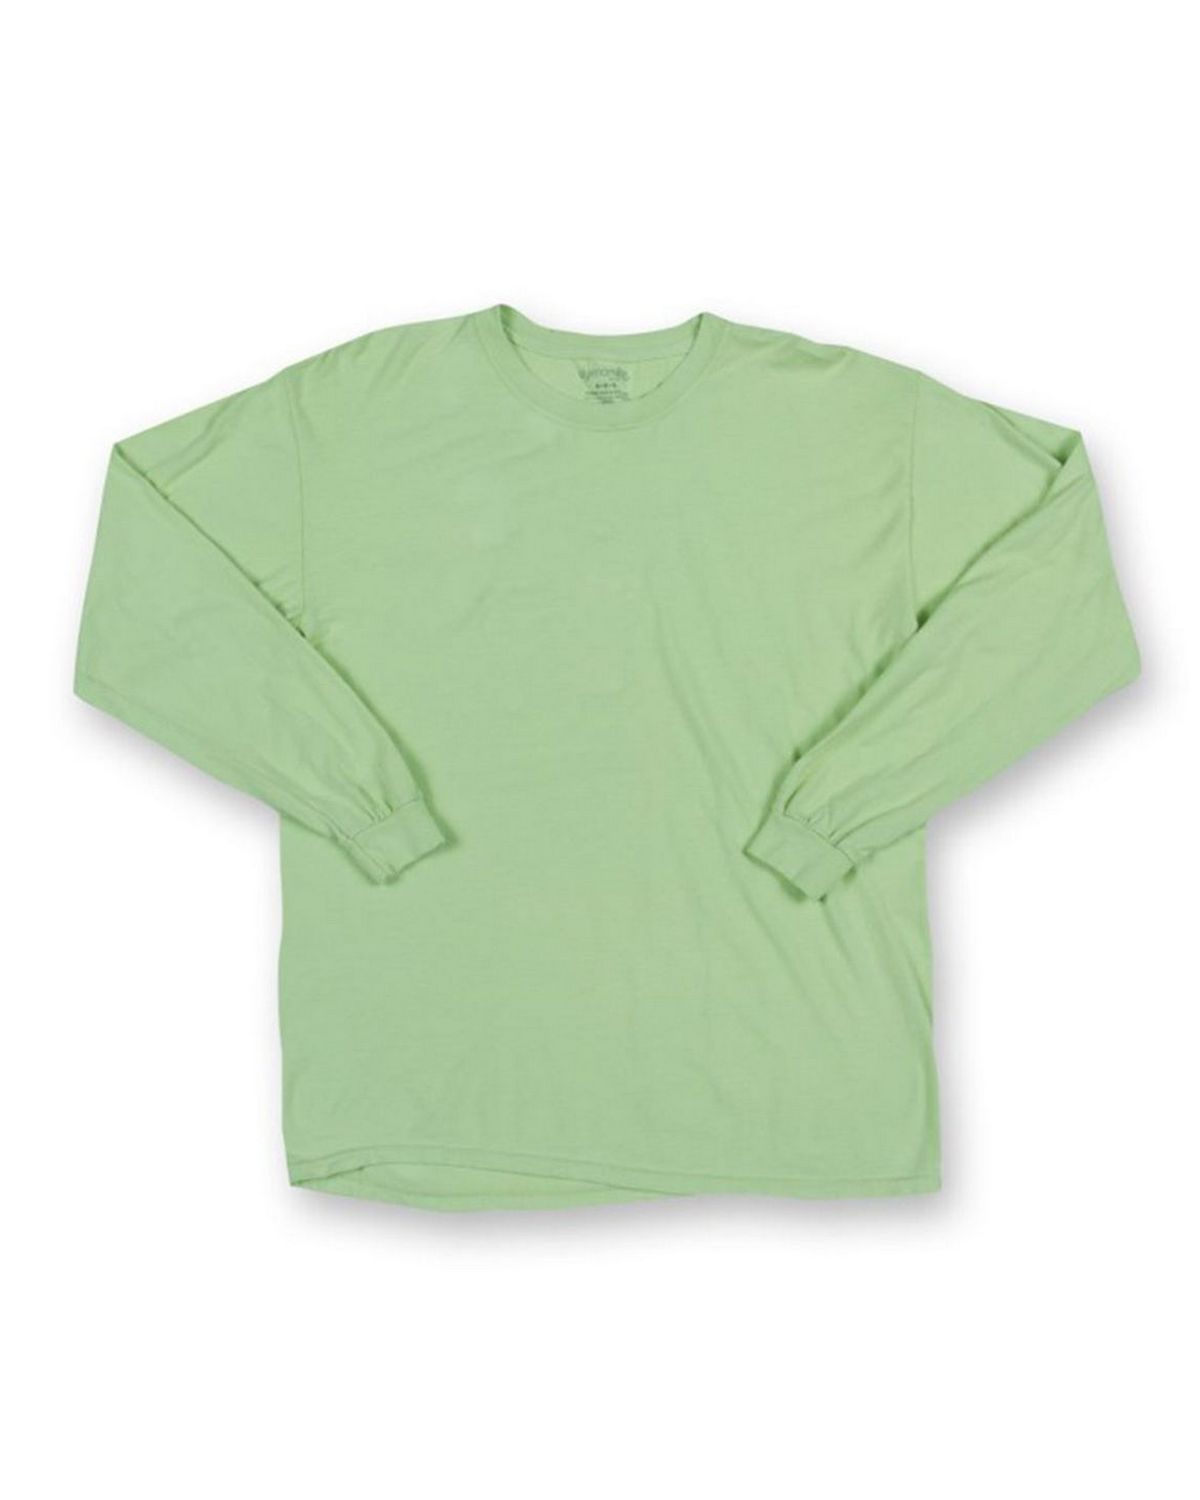 Dyenomite 470PG Pigment Dyed Garment Tie Dye T Shirt